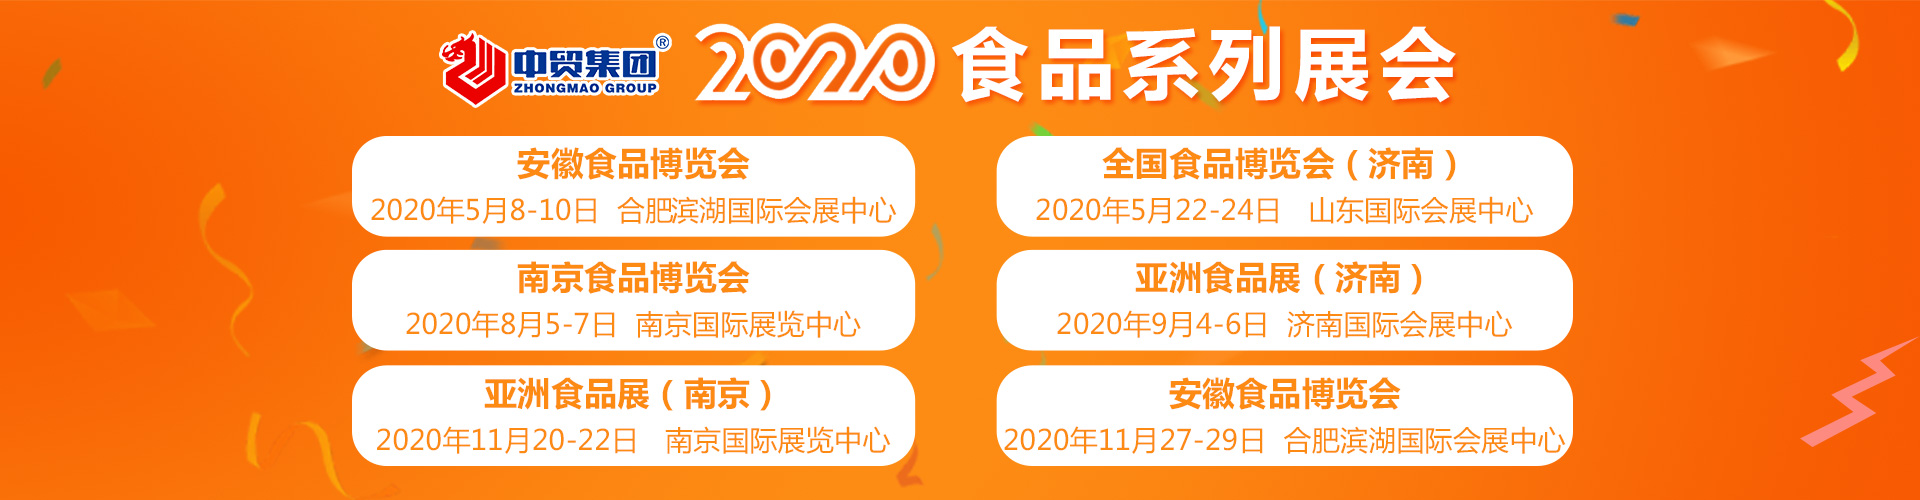 南京2020*八届中国南京食品博览会现场活动 南京糖酒会 欢迎来电垂询